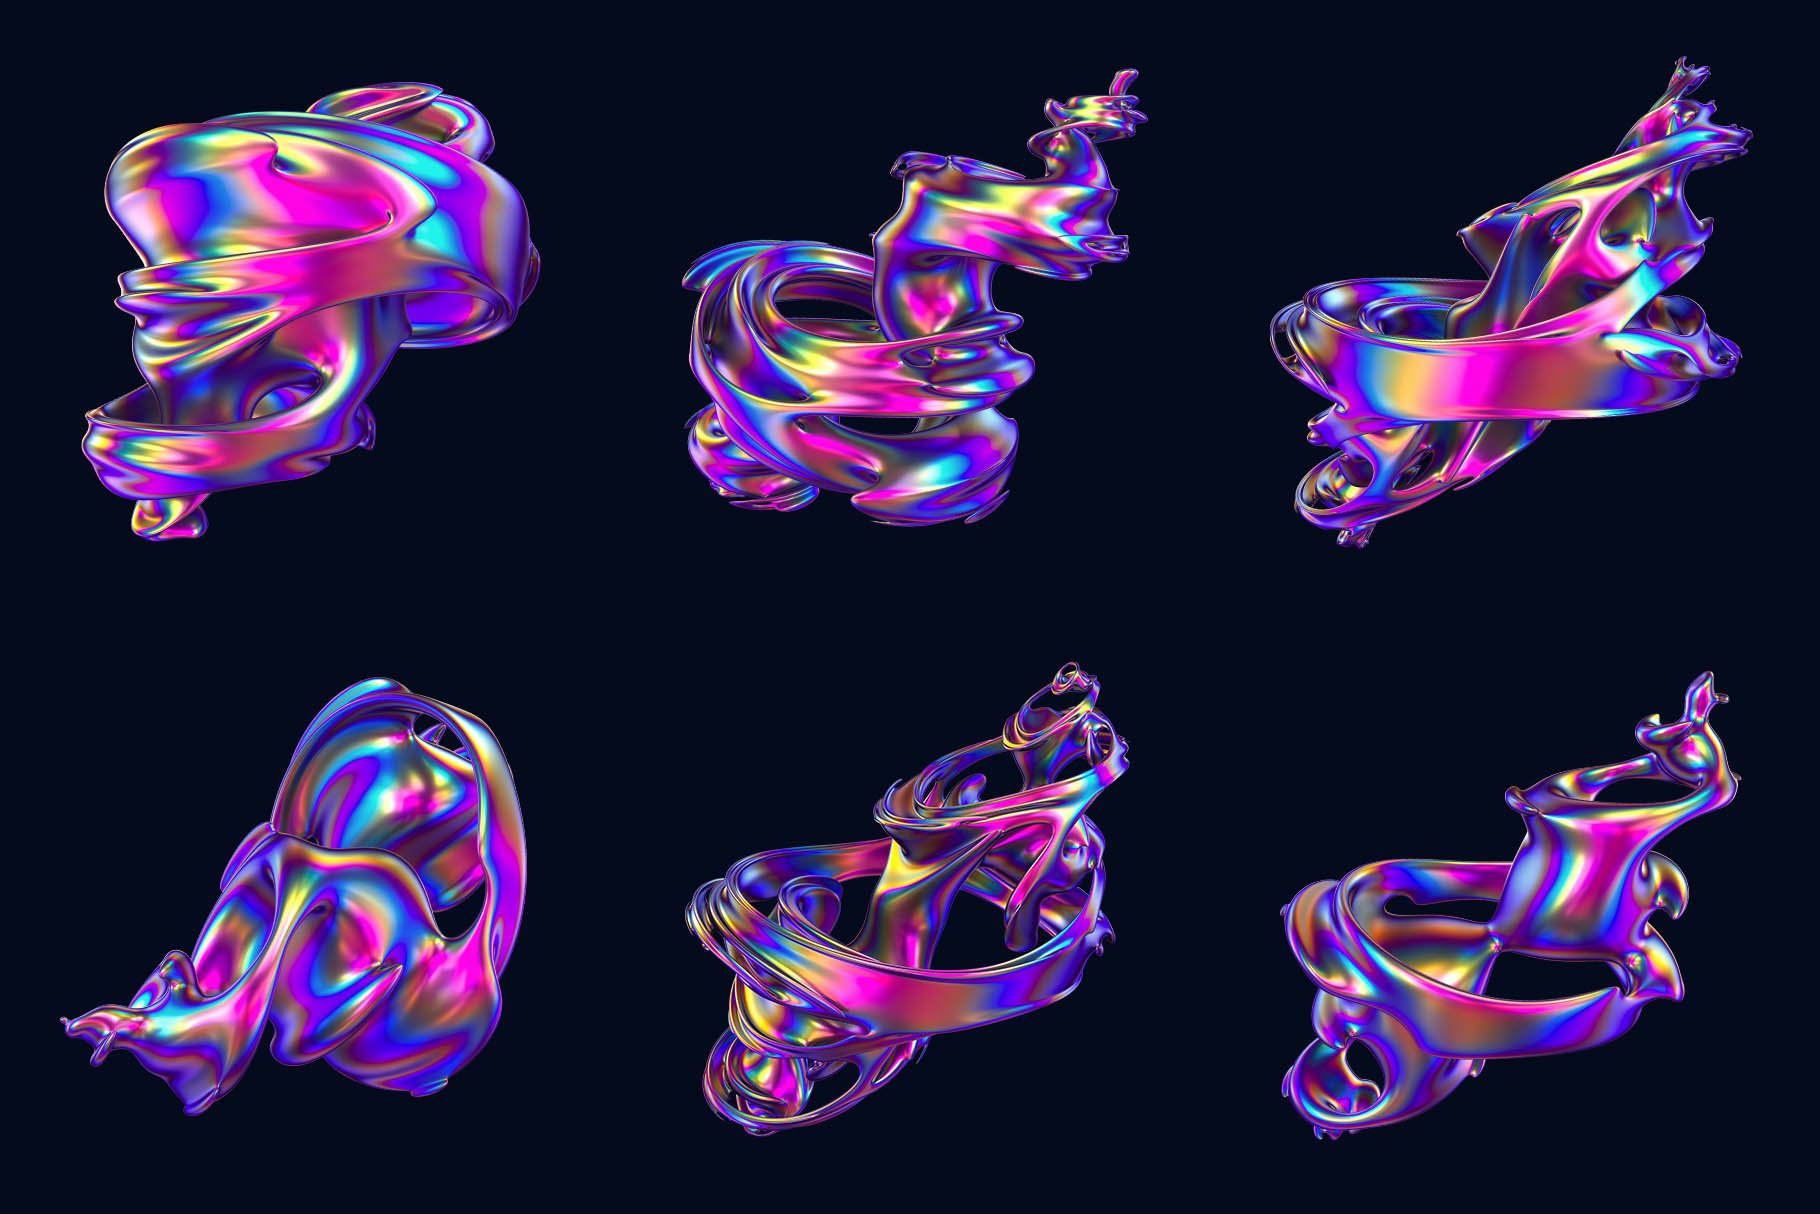 24+高级全息霓虹抽象旋风扭曲形状图案 Hyper Abstract Cyclone Shapes 图片素材 第3张